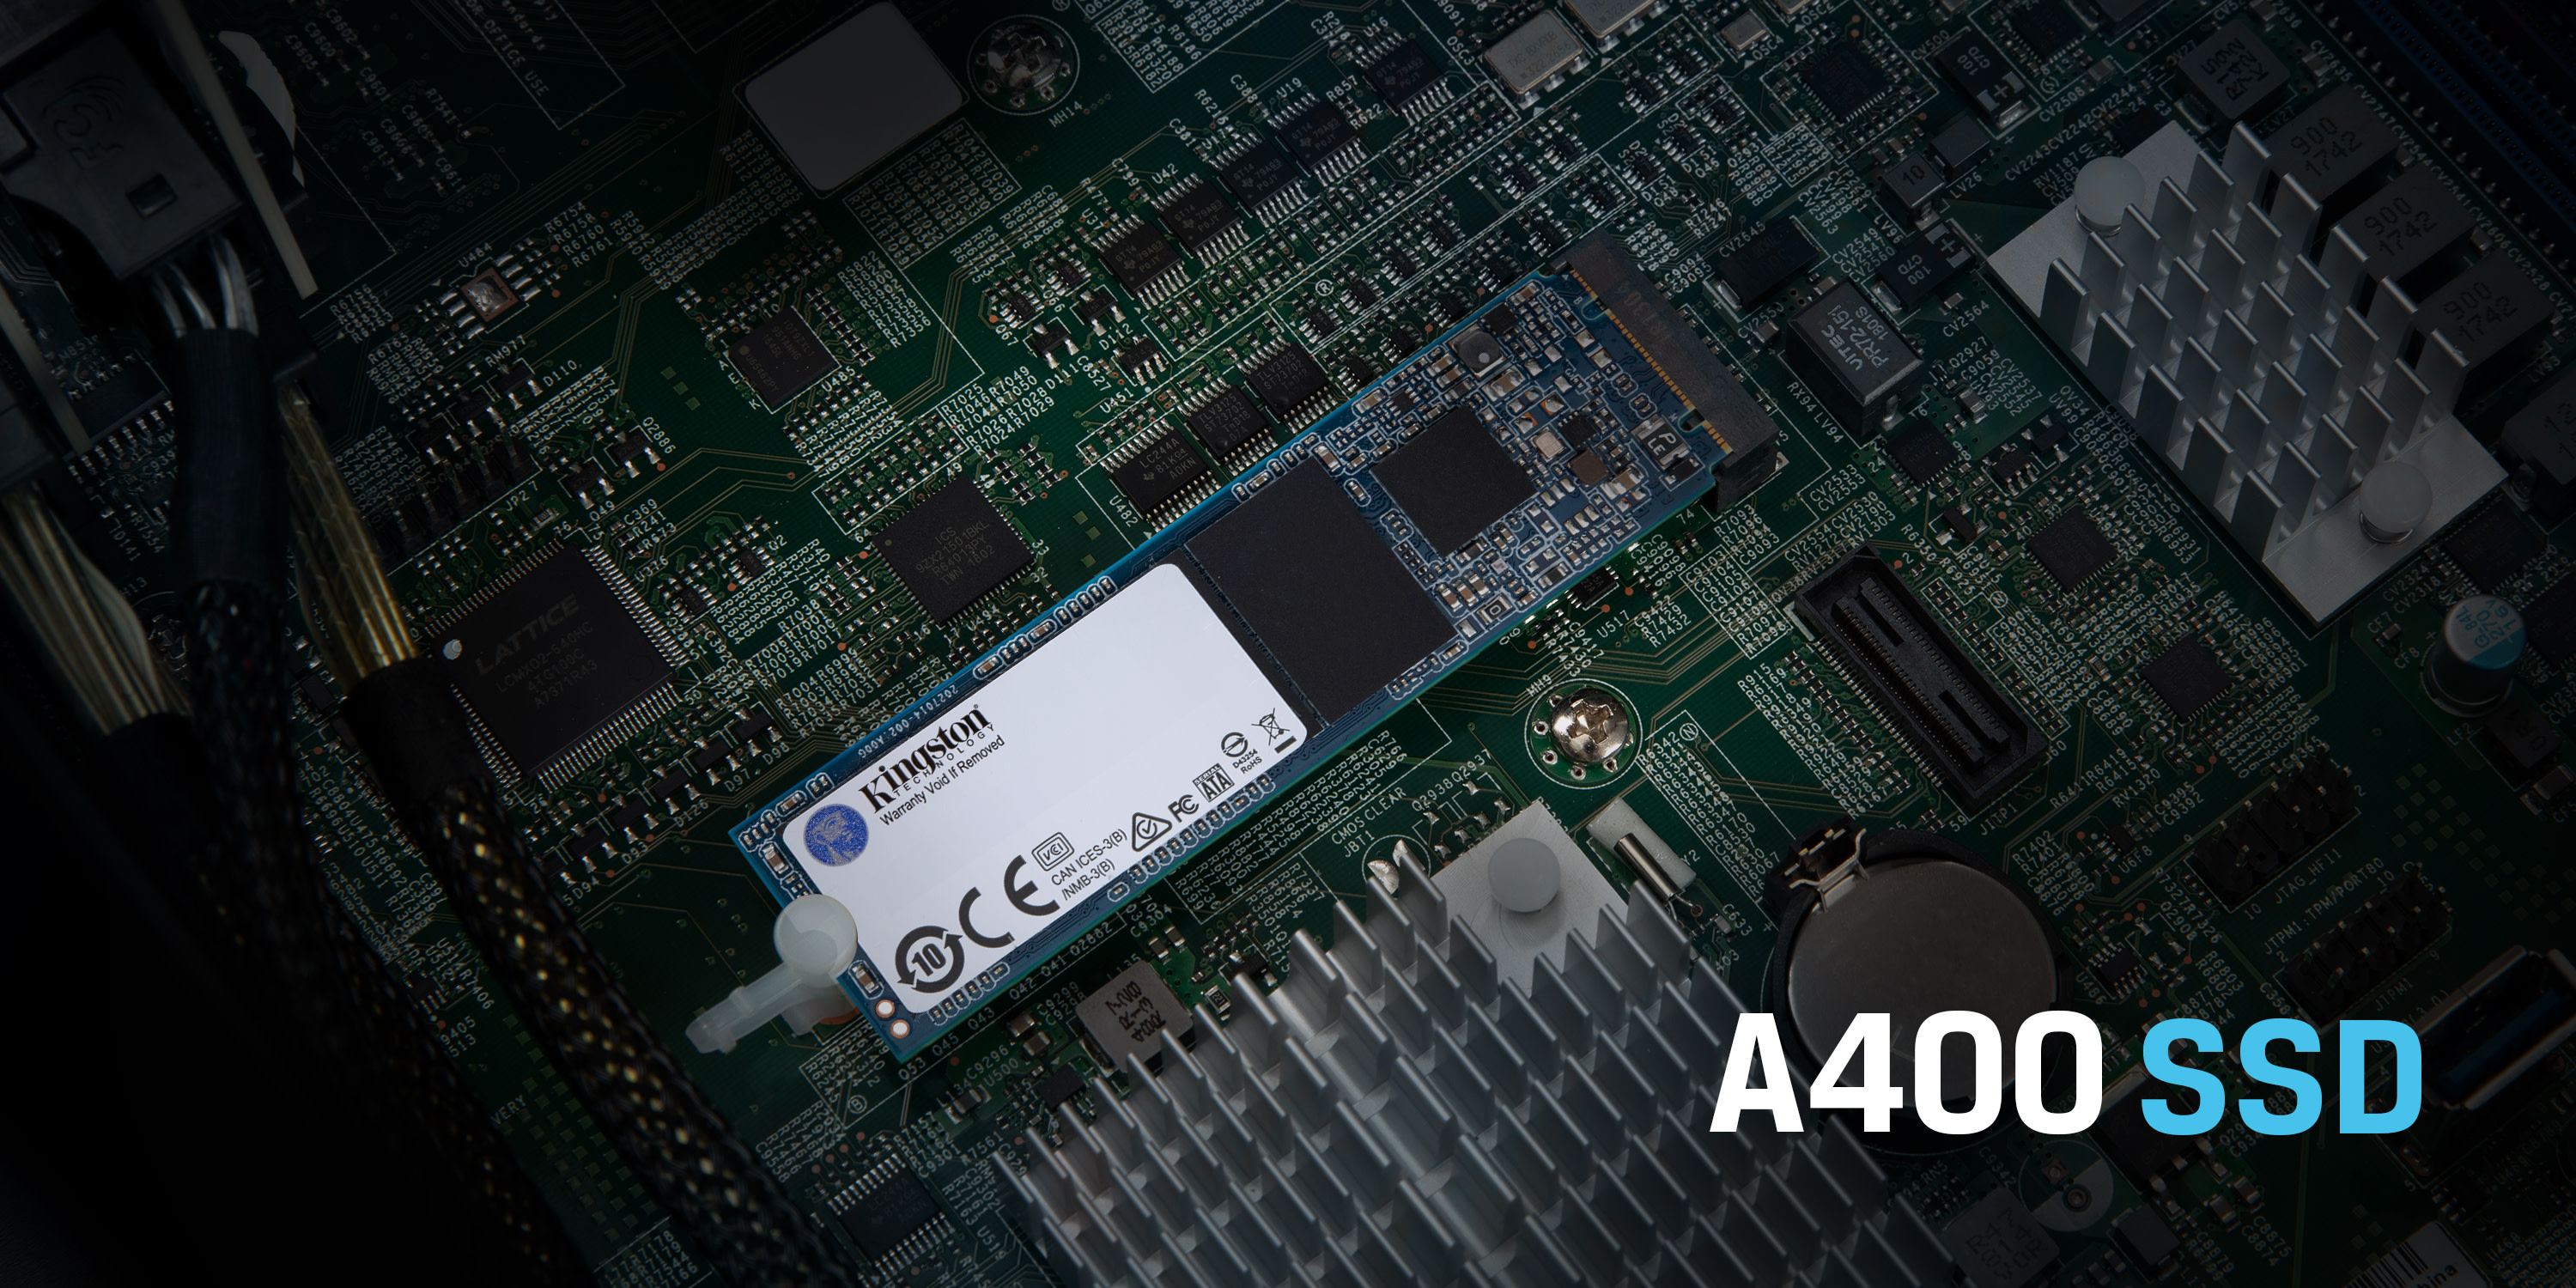 Kingston 480GB 2.5 Inch SATA III Internal SSD 480 G GB A400 Solid State Drive 